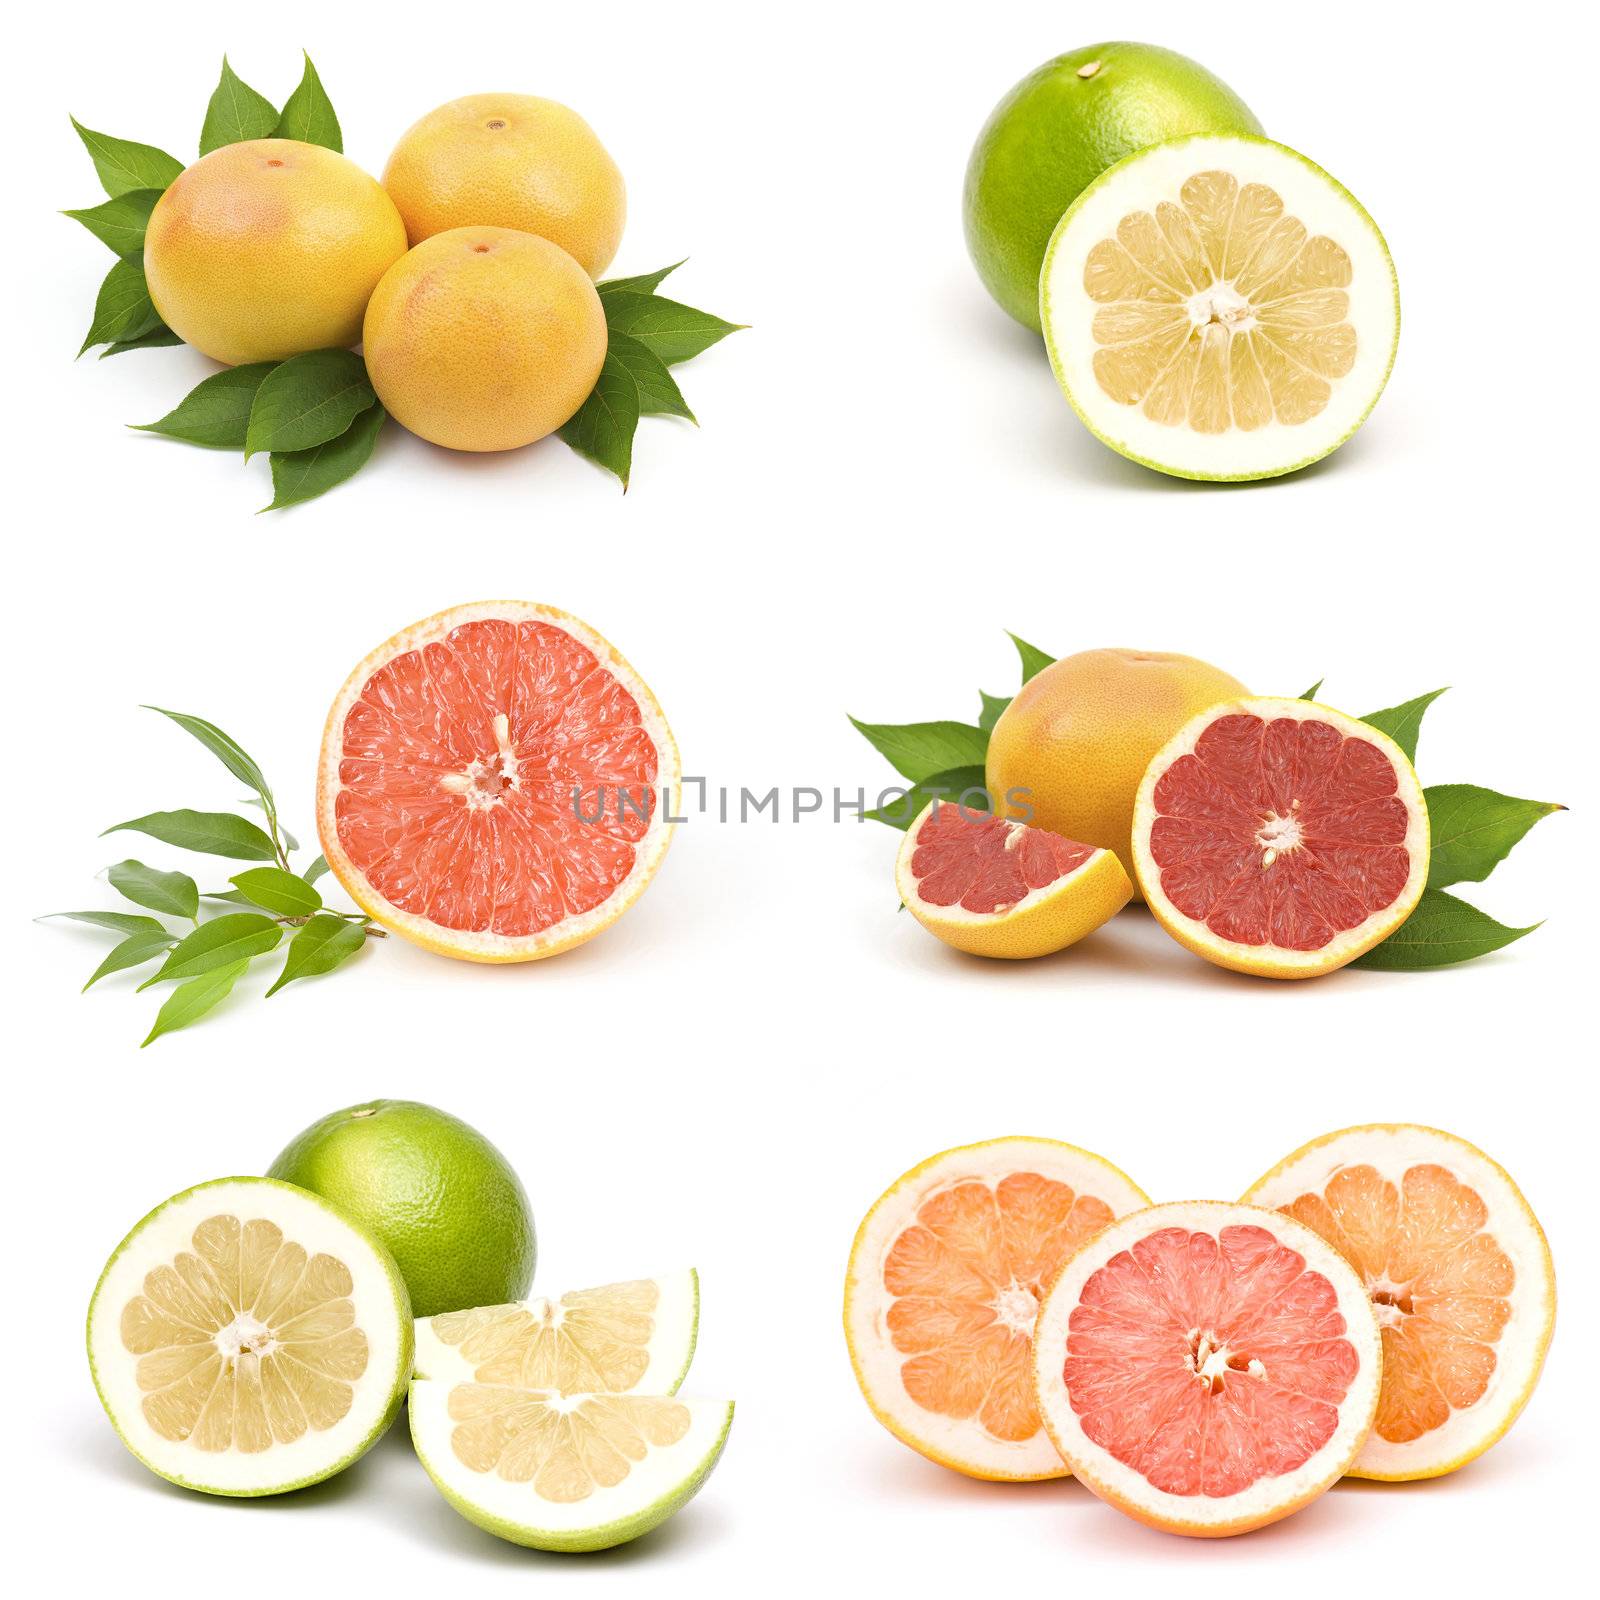 Juicy grapefruit collage by miradrozdowski